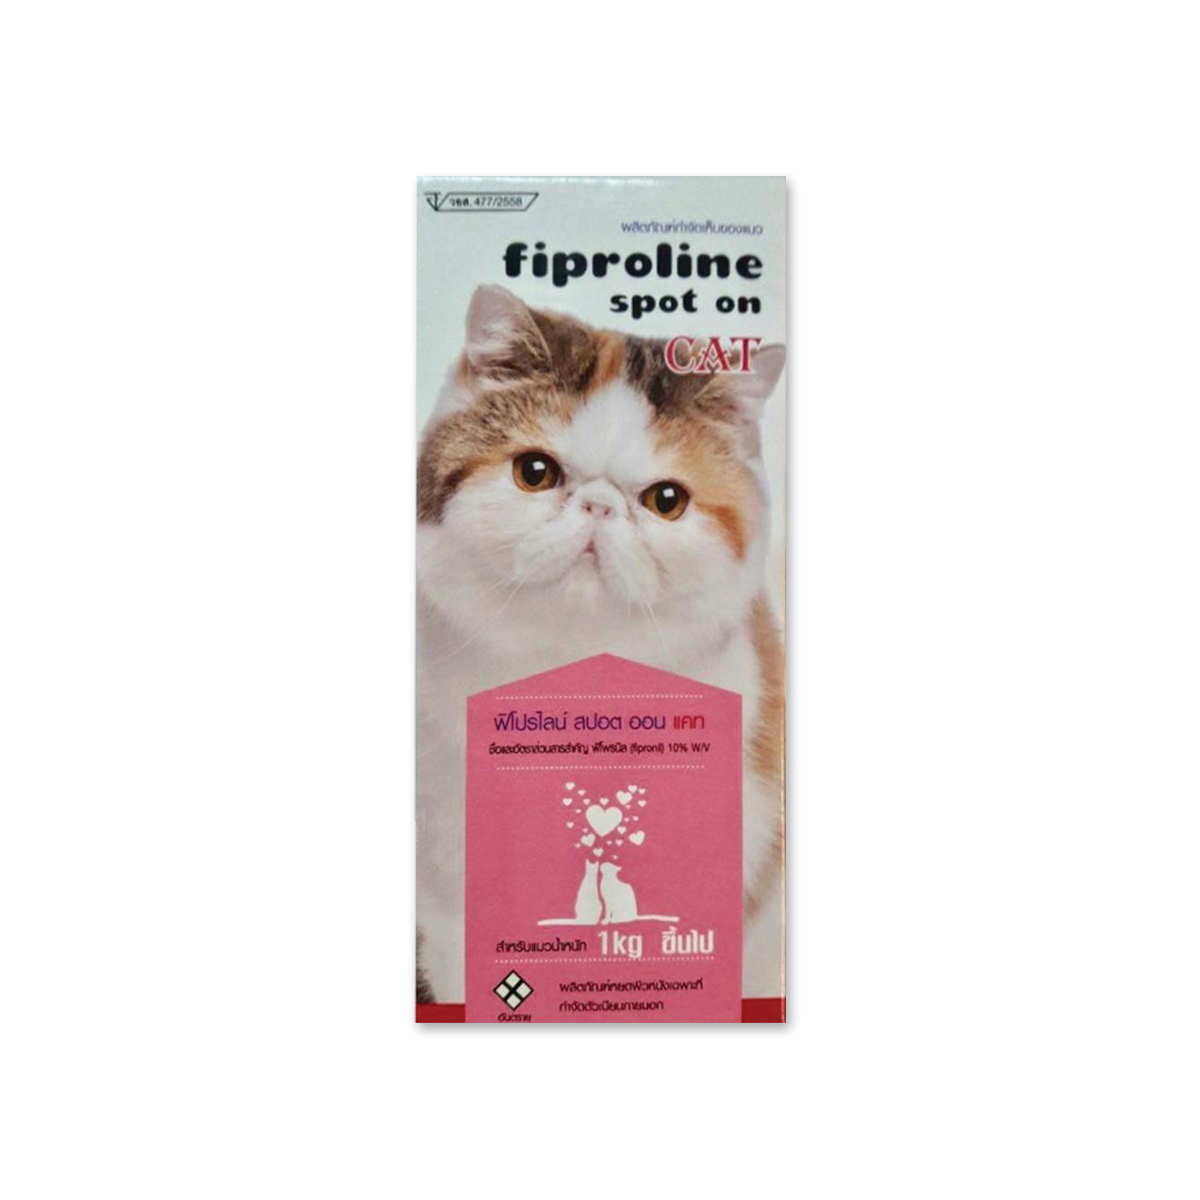 Fiproline Spot On ฟิโปรไลน์ สปอต ออน ยาหยอดกำจัดเห็บหมัด สำหรับแมว น้ำหนัก 1 กก. ขึ้นไป